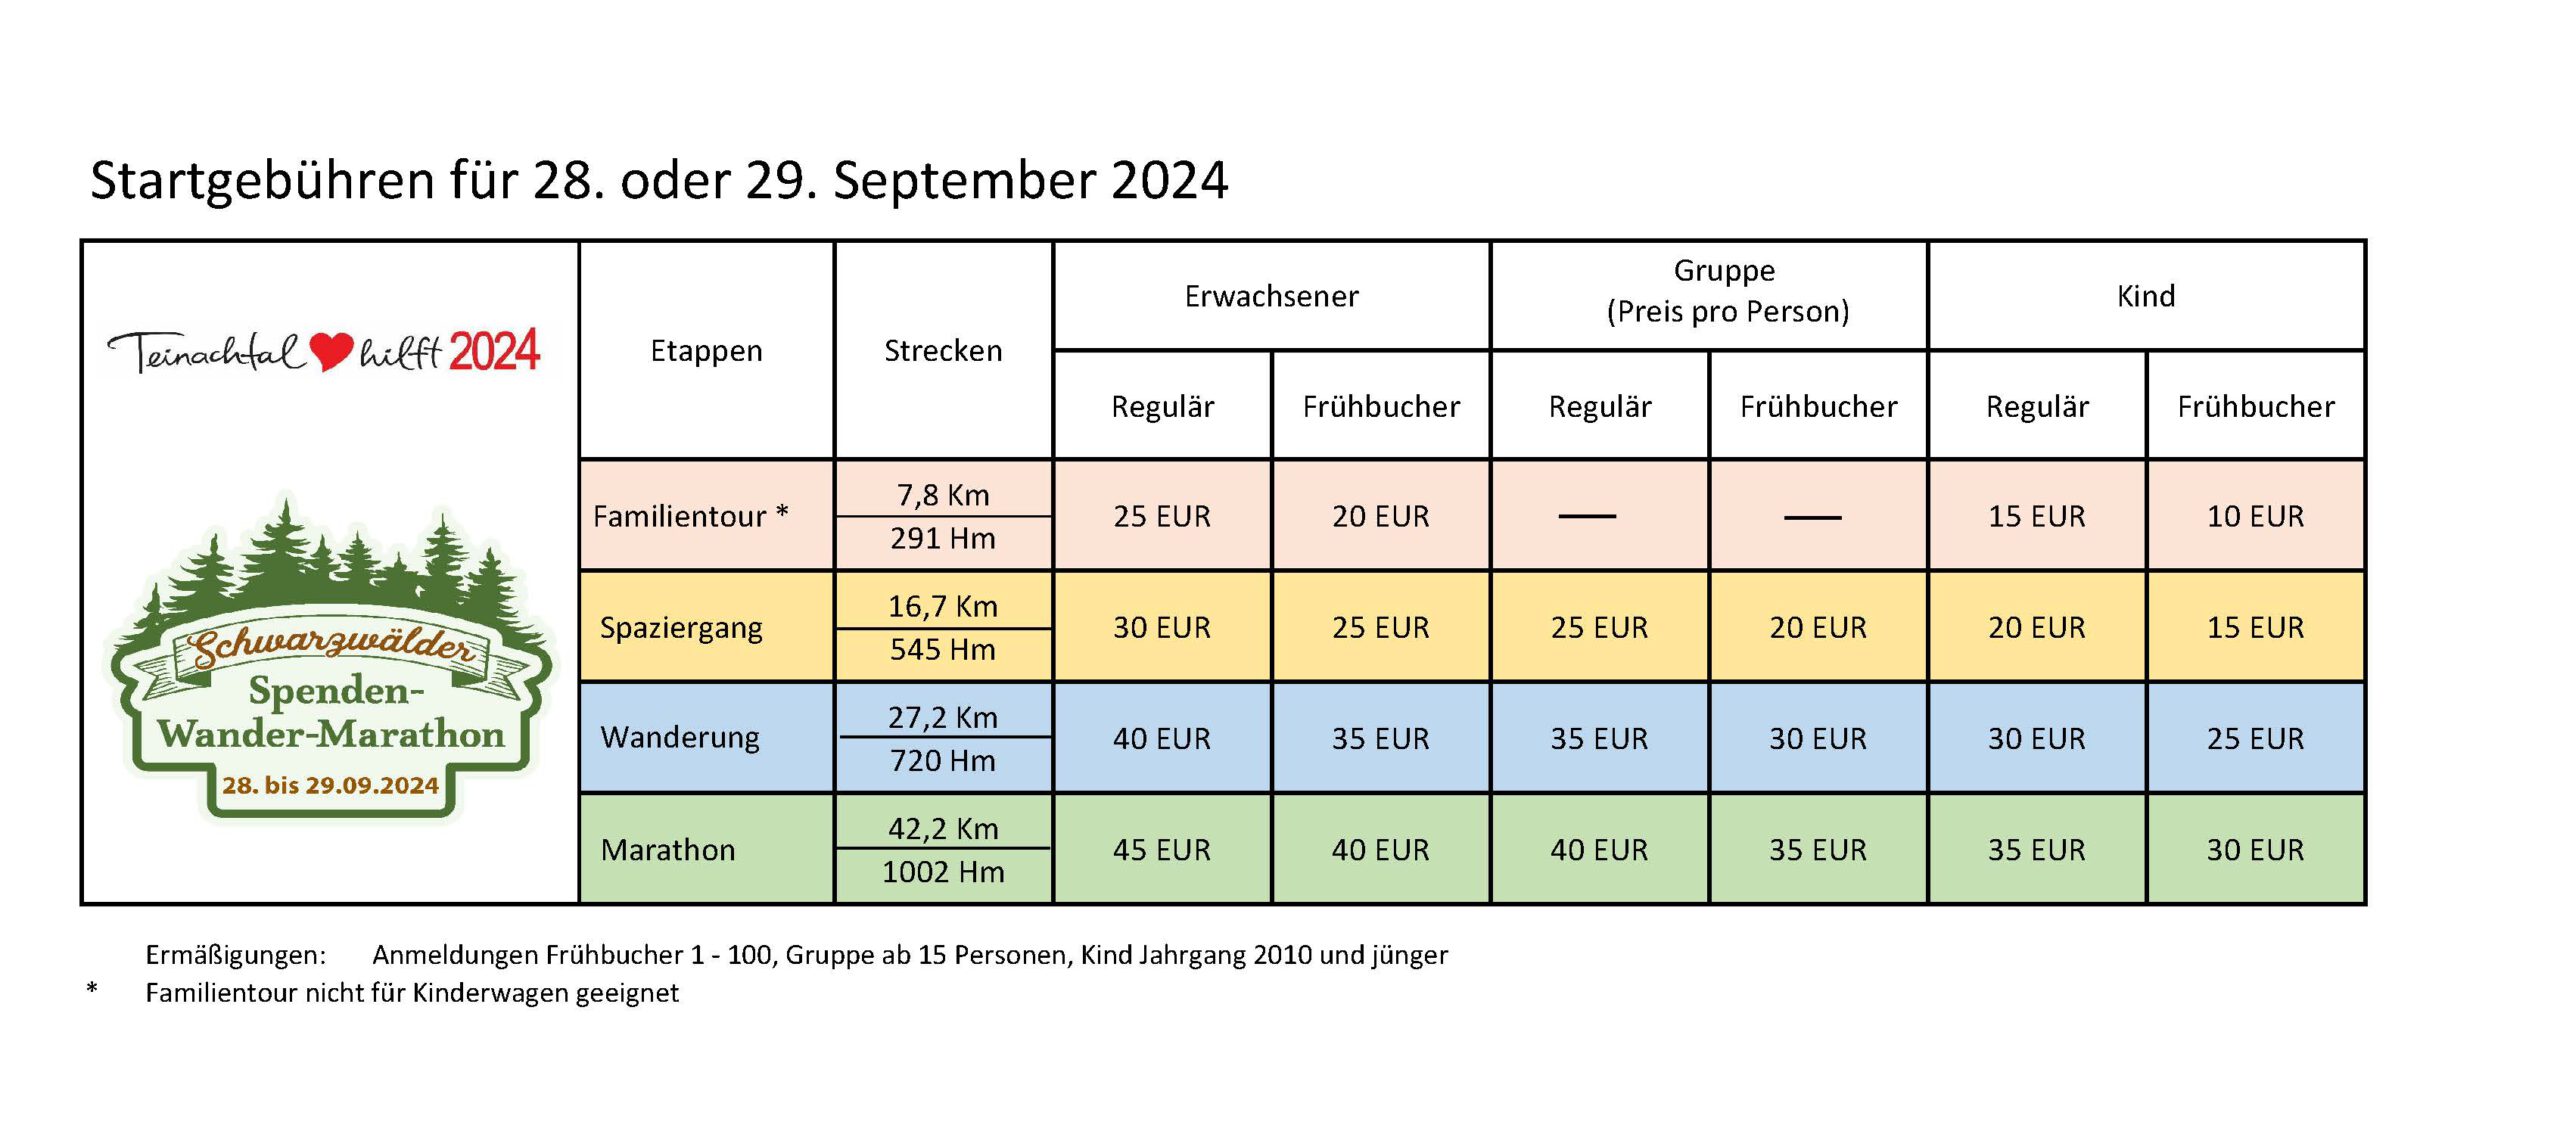 Schwarzwälder Spenden-Wander-Marathon Gebührenübersicht 2024